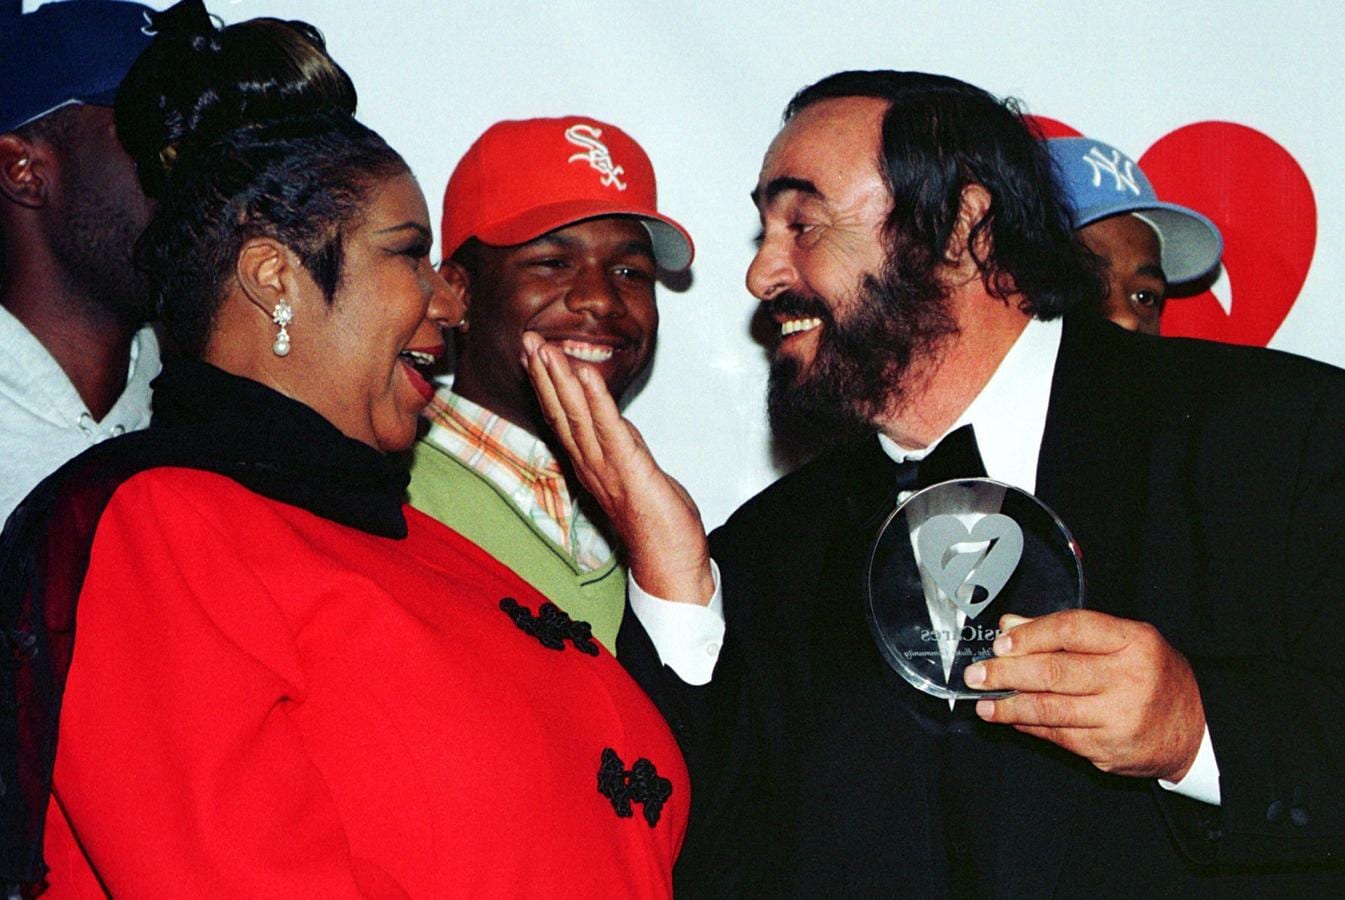 La cantante coincidió con Luciano Pavarotti en una cena benéfica en Nueva York en 1998. 